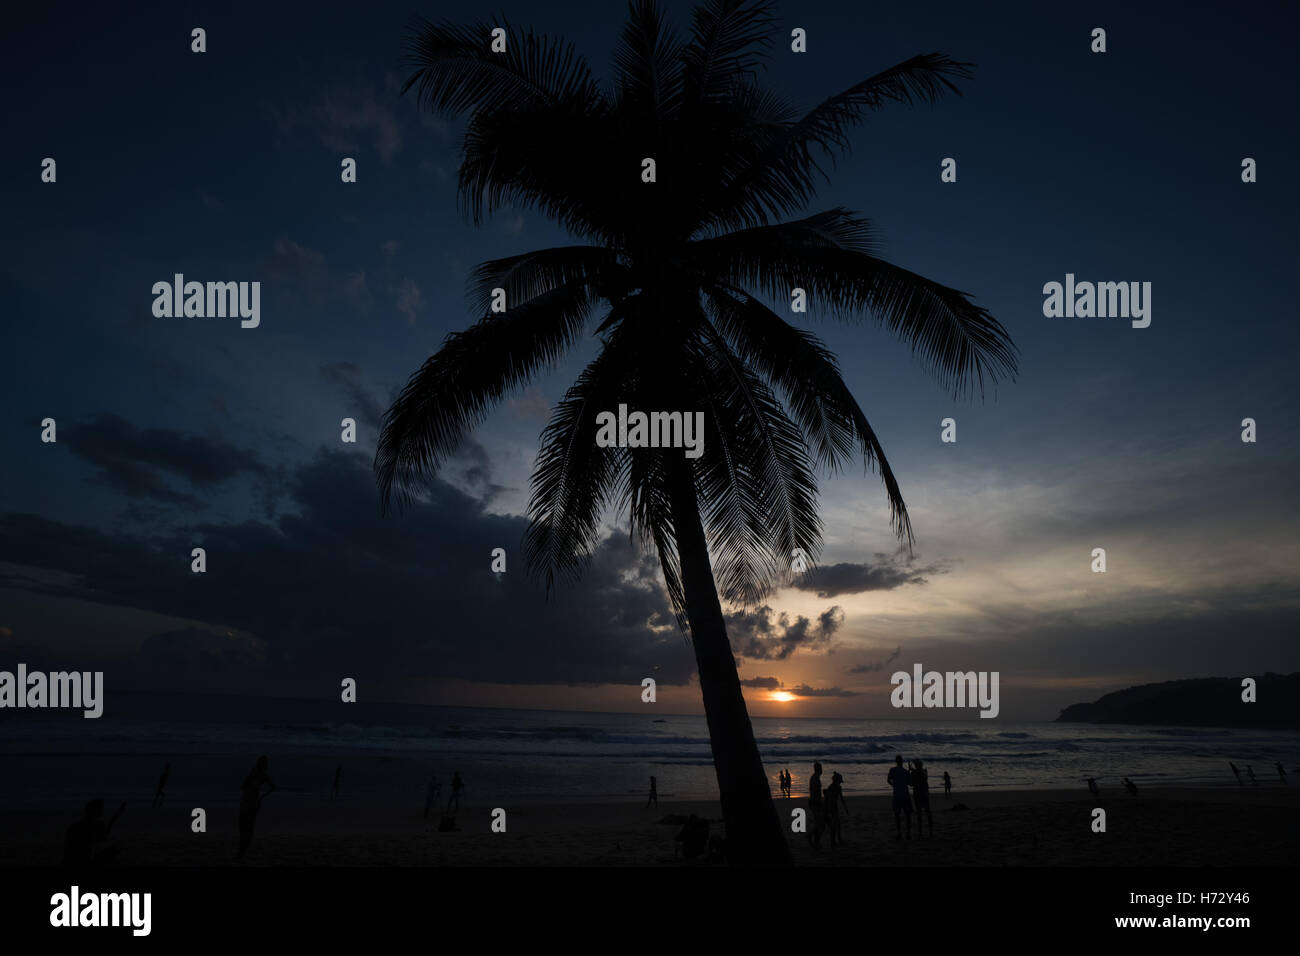 Palmier et des silhouettes de gens qui marchent sur la plage pendant le coucher du soleil magnifique. Concept d'été Banque D'Images